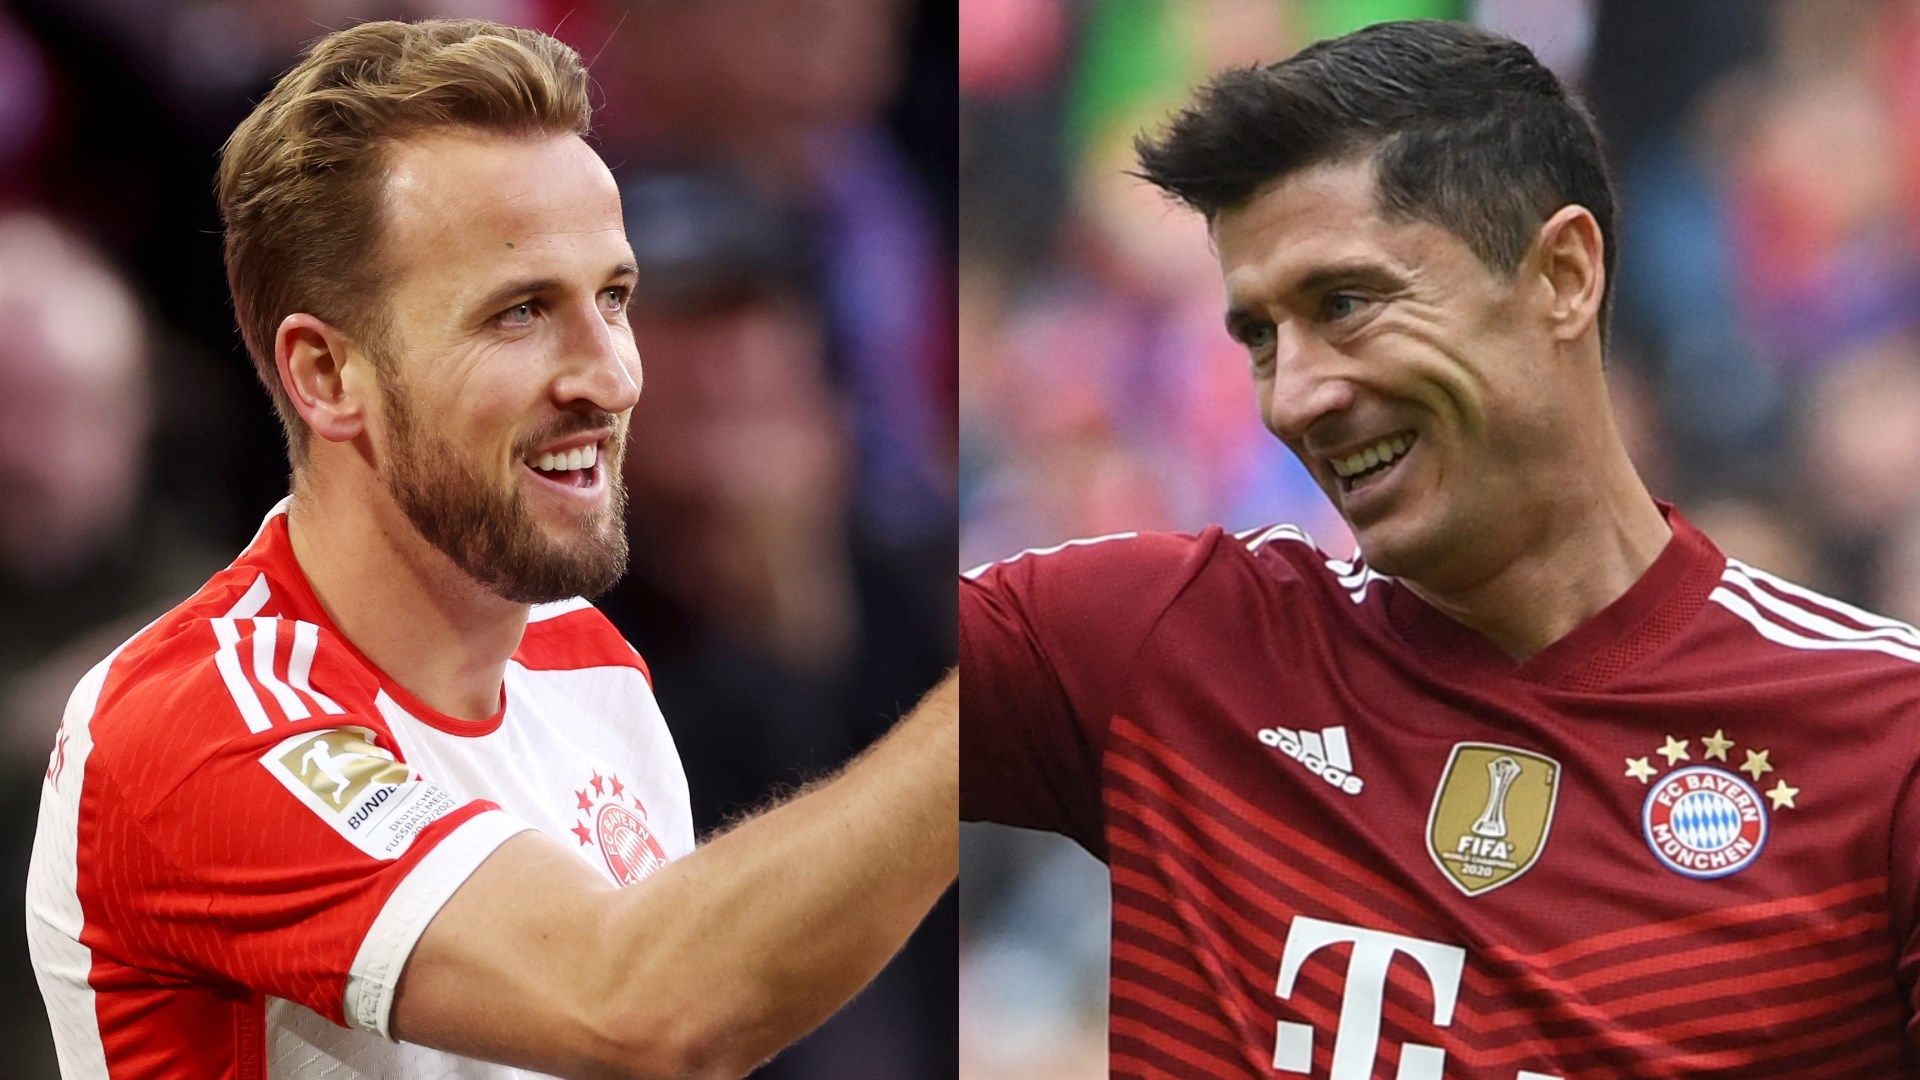 "Man hatte immer den Eindruck, dass er für sich selbst spielt": Robert Lewandowski wurde beim FC Bayern im Vergleich zu Harry Kane wohl als Egoist wahrgenommen